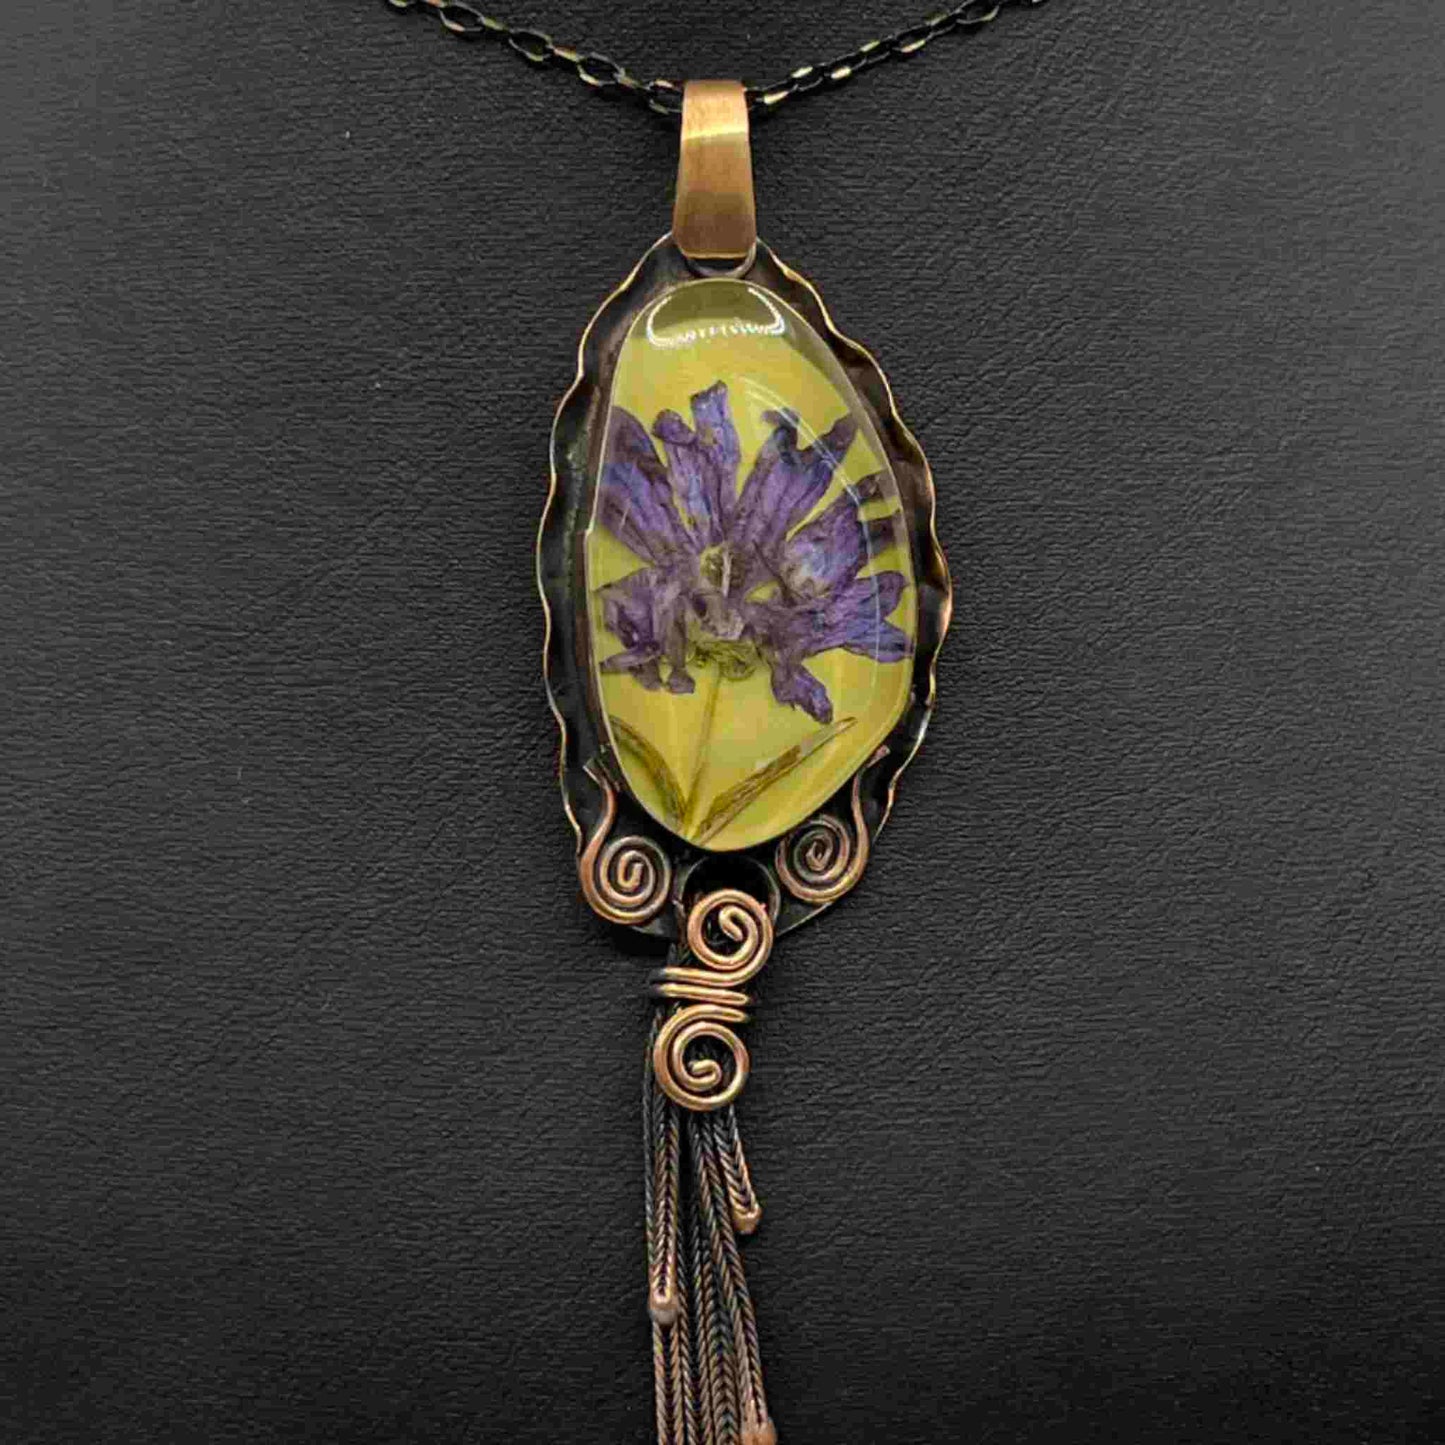 Handmade bronze necklace with Gaziana Puskulu flower